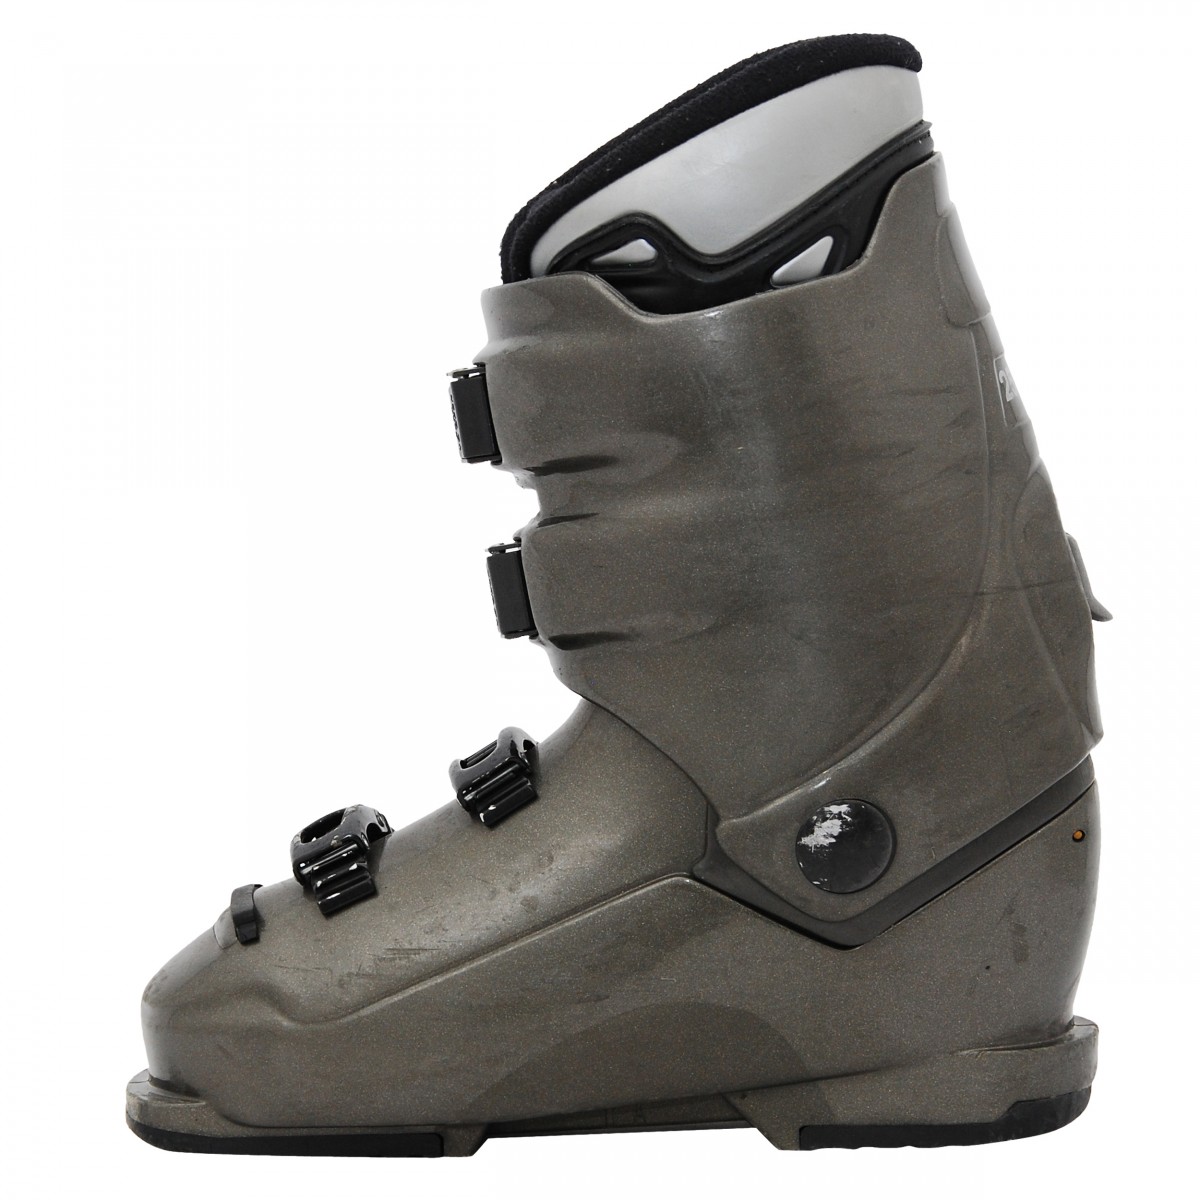 Chaussure de ski occasion modèle Dalbello Max - Qualité B - 42_42.5/27MP 3